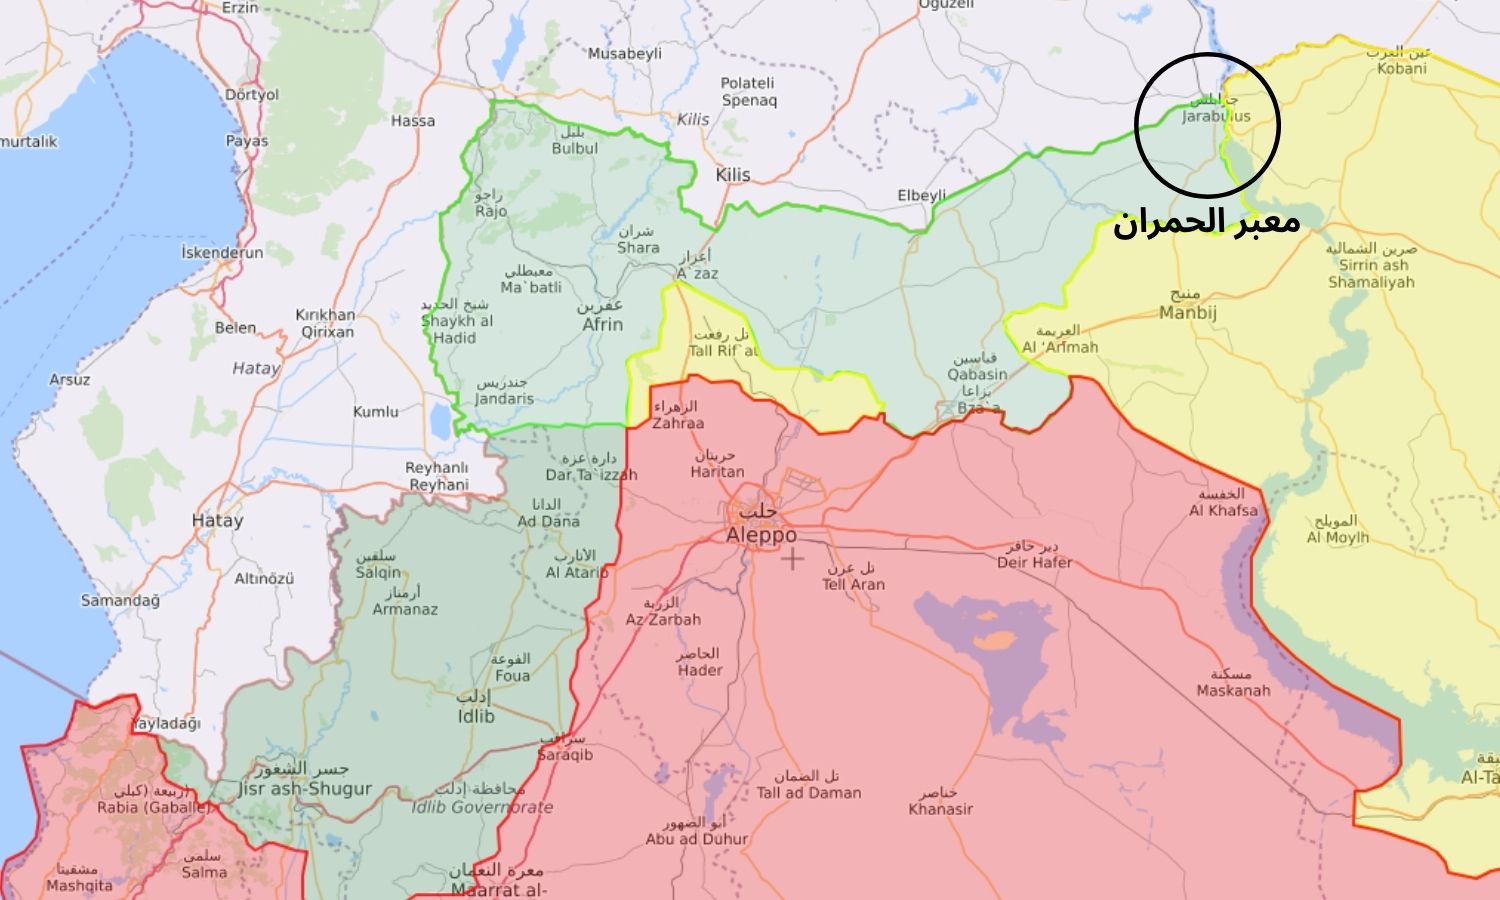 خريطة توضح مكان معبر "الحمران" الفاصل بين مناطق سيطرة "الحكومة المؤقتة" و"قوات سوريا الديمقراطية" (قسد) في منطقة جرابلس شمال شرقي حلب (Guerra map)